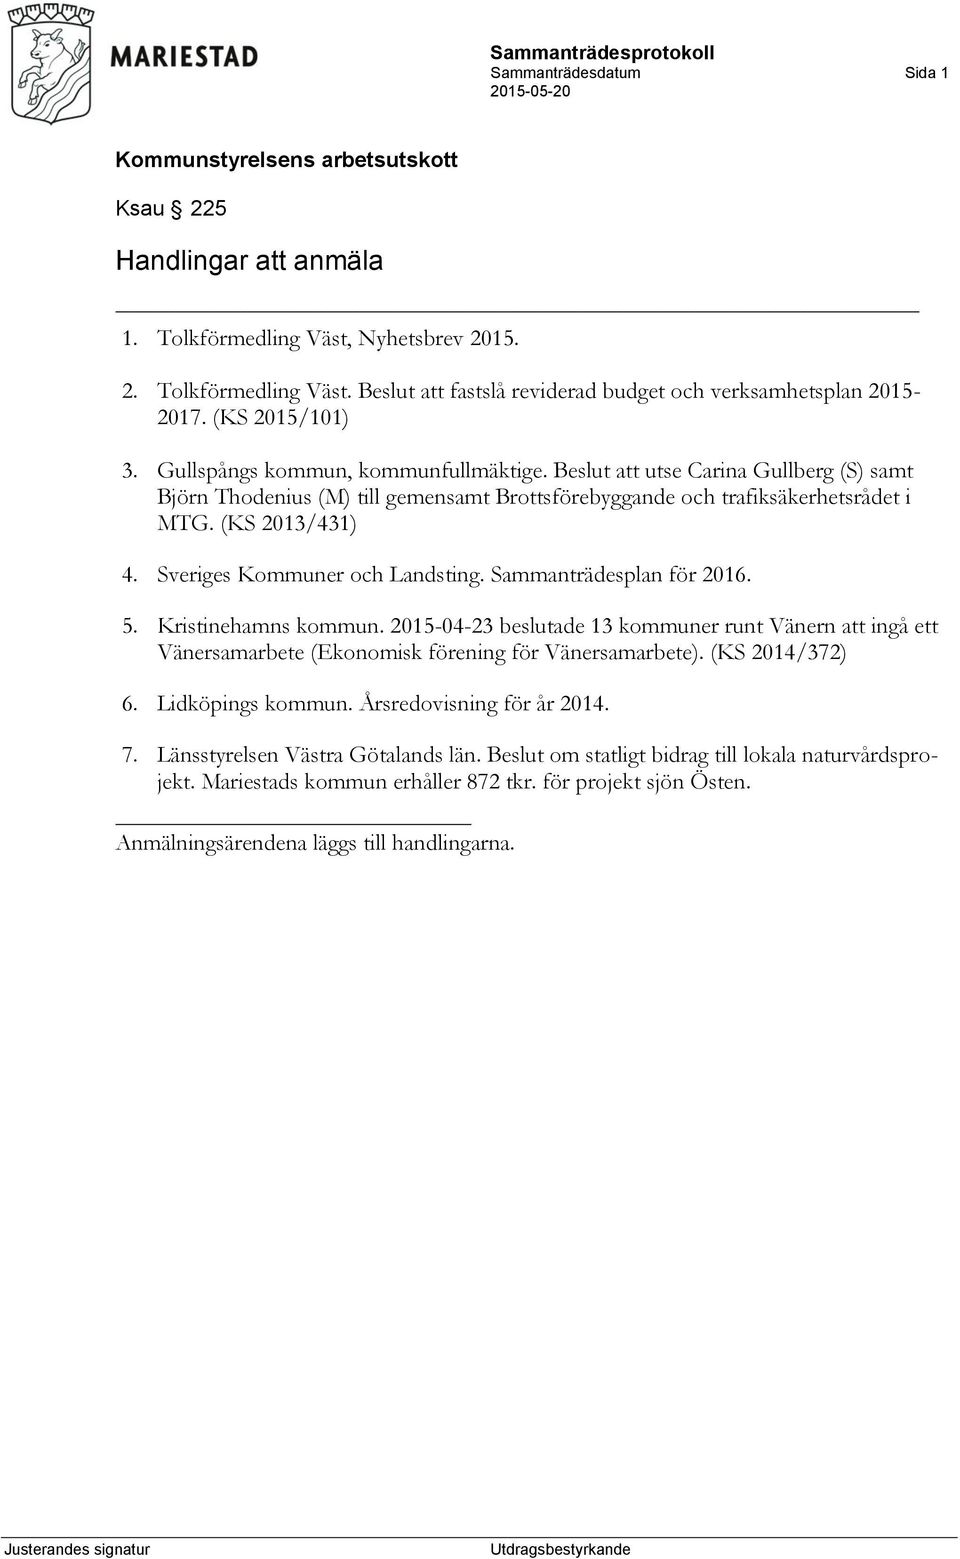 Sveriges Kommuner och Landsting. Sammanträdesplan för 2016. 5. Kristinehamns kommun. 2015-04-23 beslutade 13 kommuner runt Vänern att ingå ett Vänersamarbete (Ekonomisk förening för Vänersamarbete).